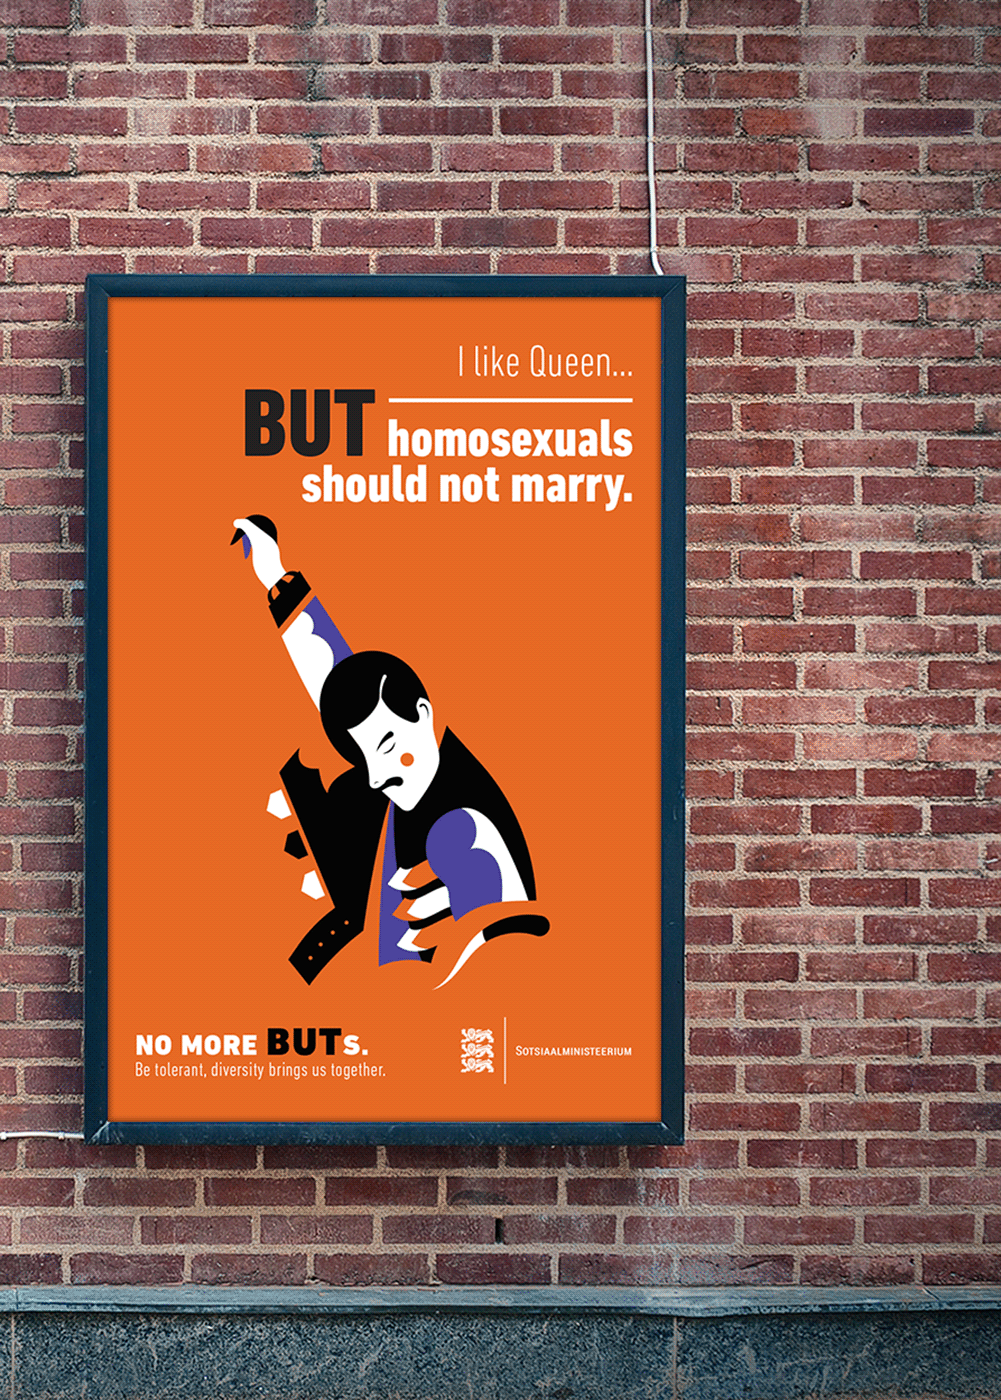 advertisingcampaign poster posterdesign ILLUSTRATION  diveristy equalrights Vectorillustration LGBTQ social editorialillustration